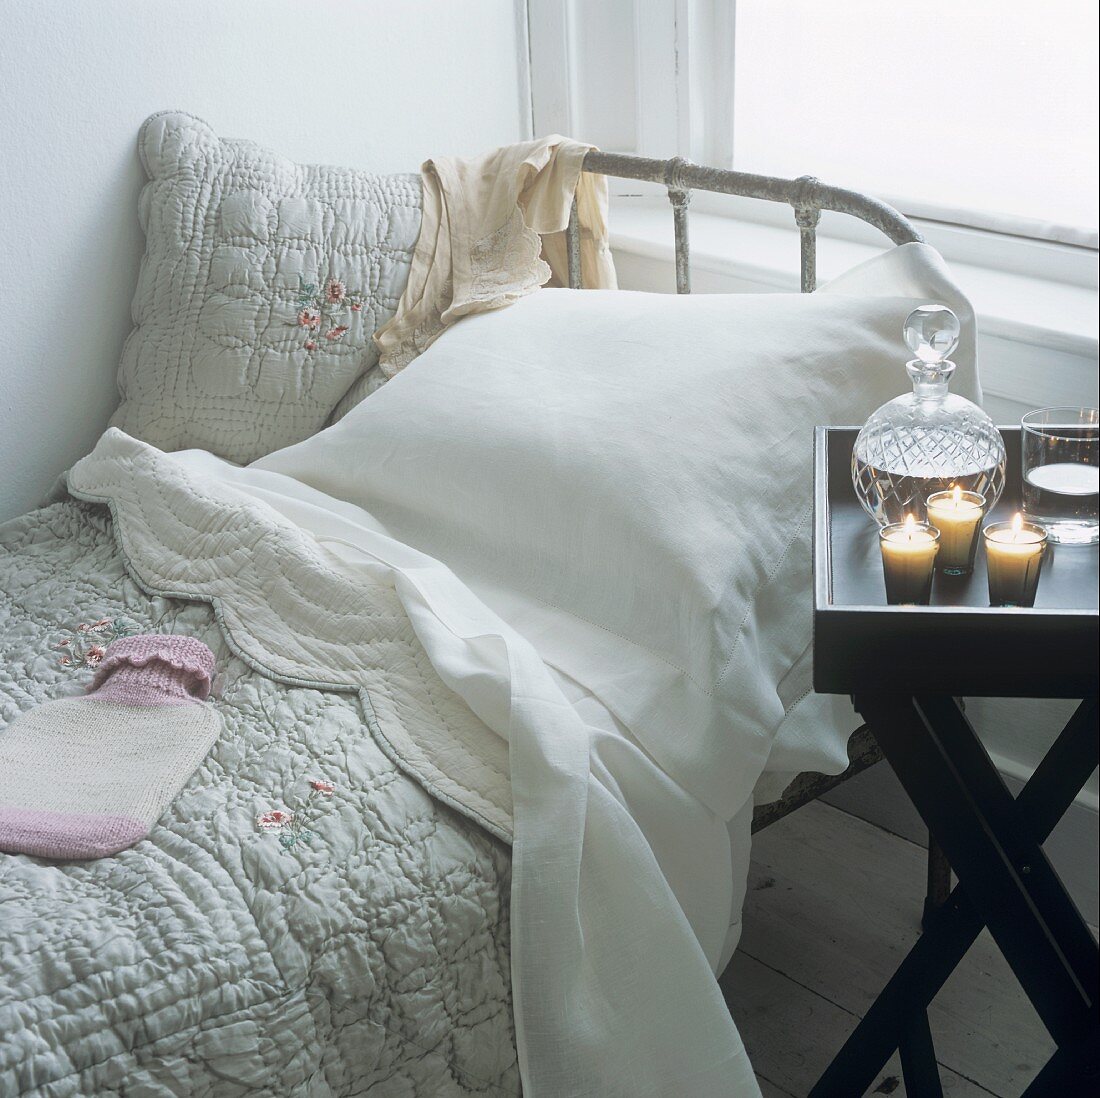 Ein Bett mit Tagesdecke und Wärmeflasche und ein Tabletttisch mit Kerzen und Wasser